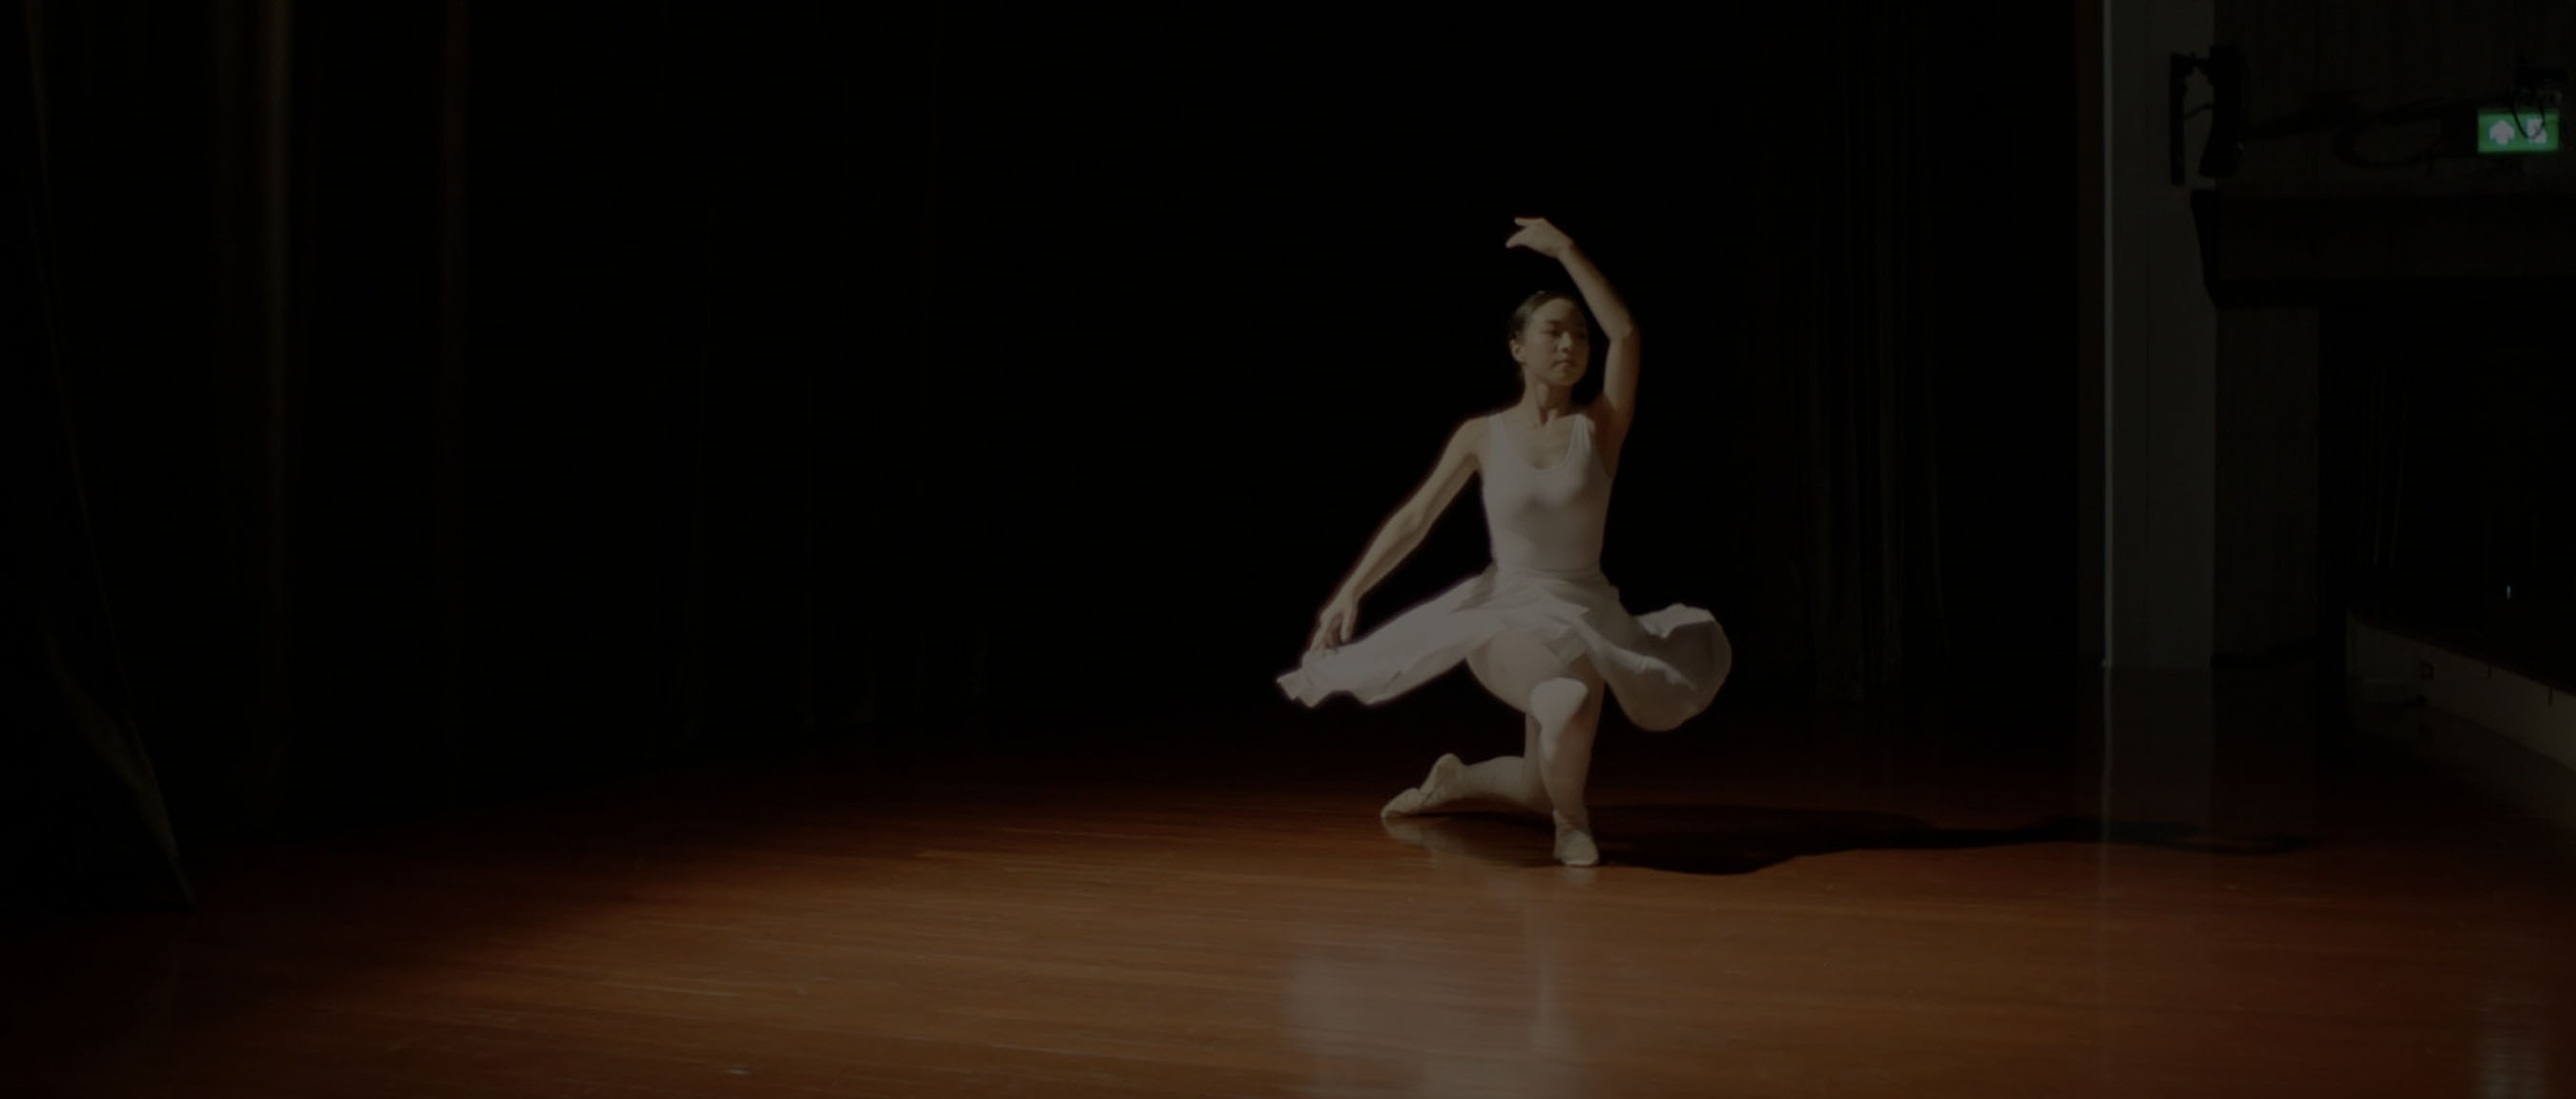 Social Media Launch Video Still of Dancer